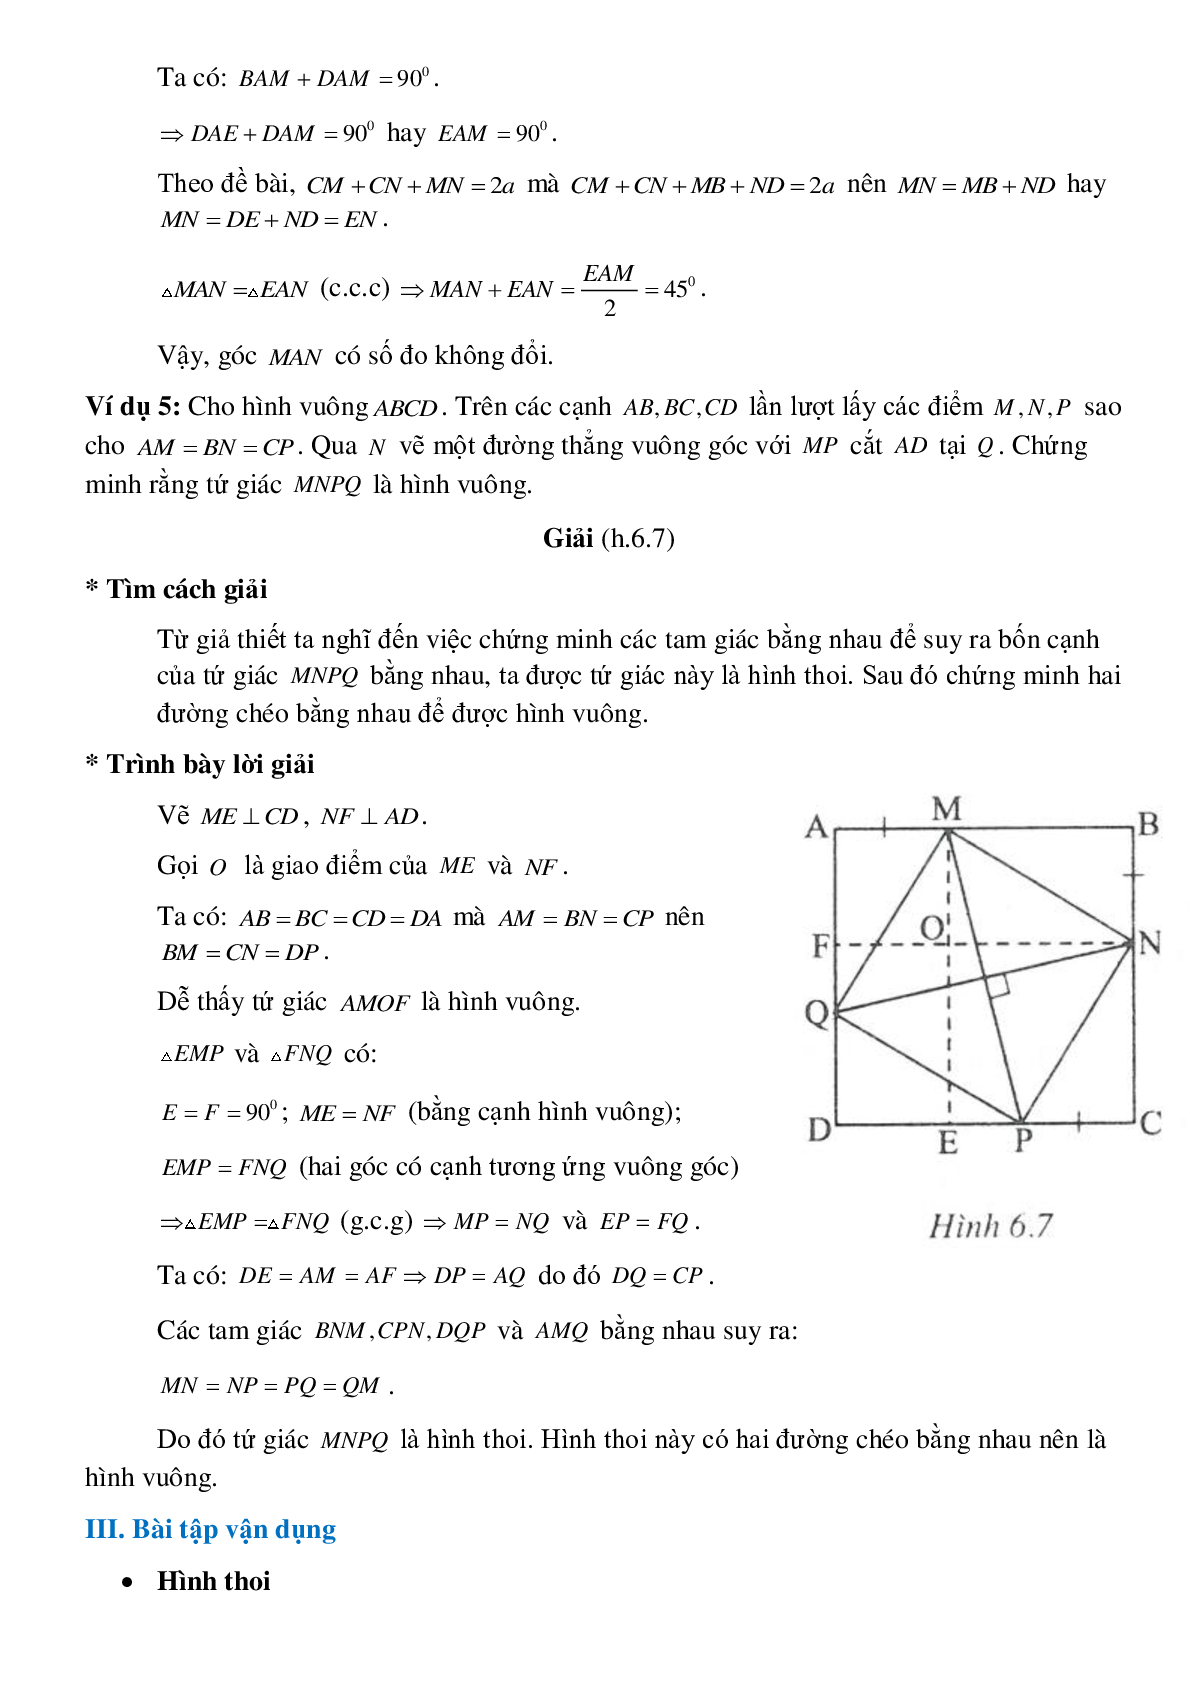 Hình thoi và hình vuông (trang 4)